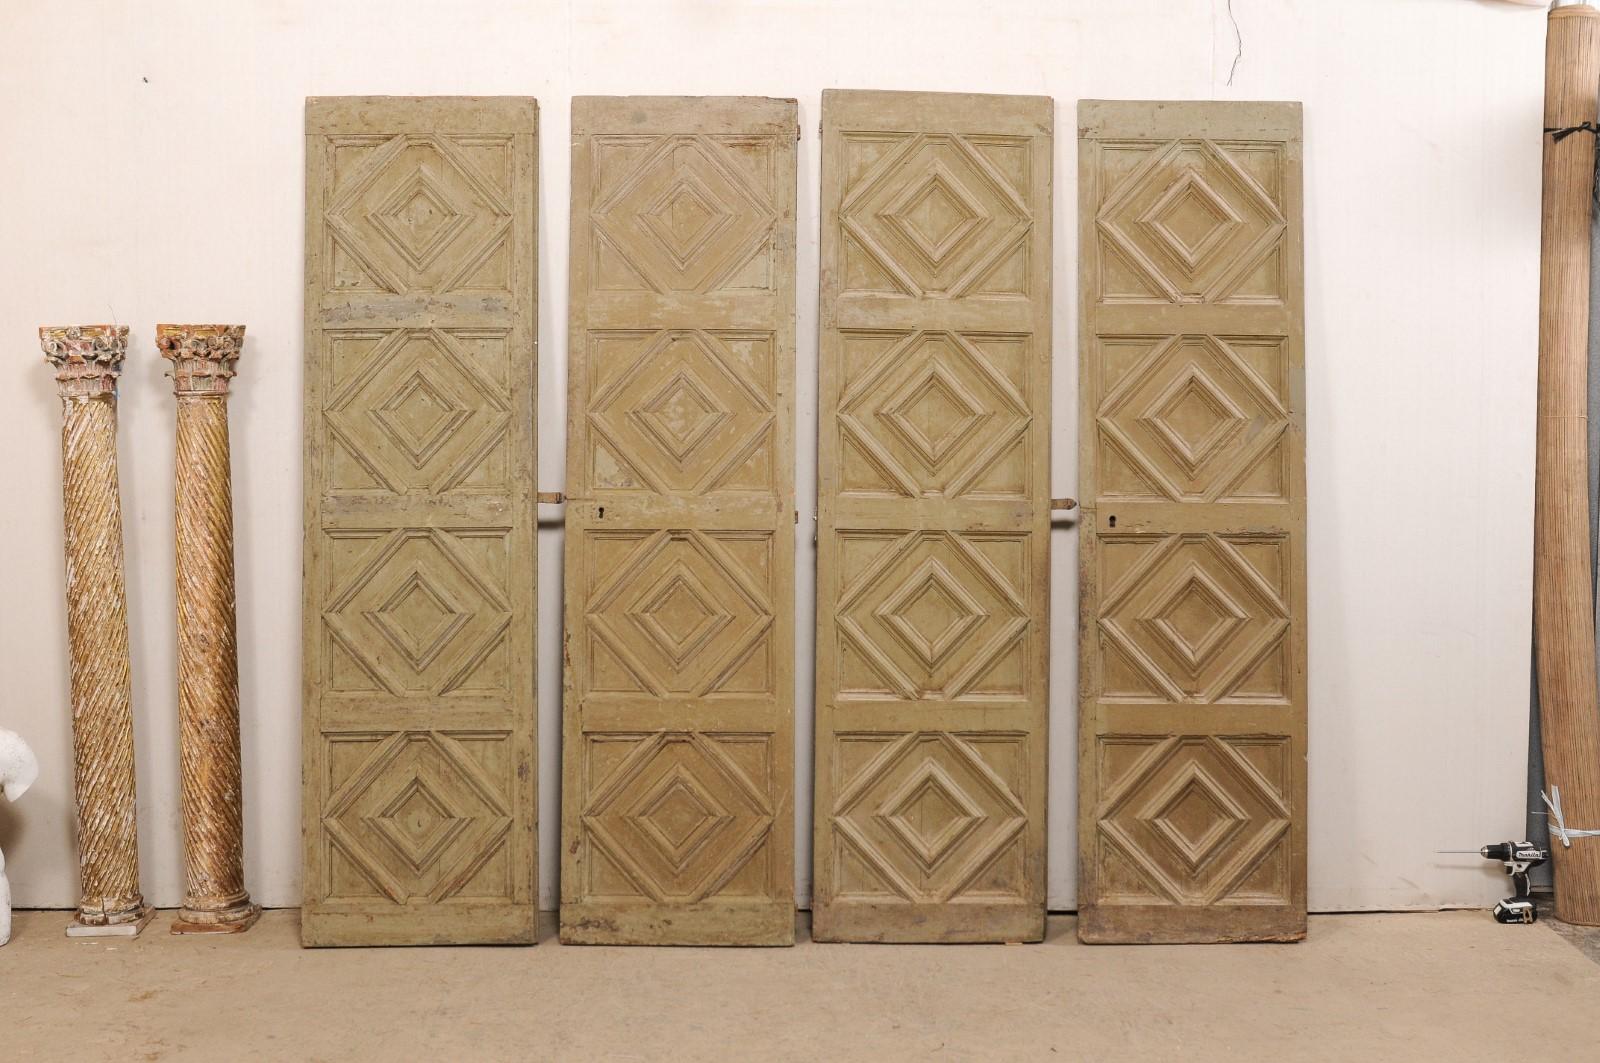 Ein spanisches Paar hochgezogener Türen aus dem 19. Jahrhundert. Diese antiken Türen aus Spanien, bestehend aus zwei Paaren (insgesamt vier Türen), weisen jeweils ein vierfach gestapeltes und erhöhtes Paneel-Design mit großen rautenförmigen